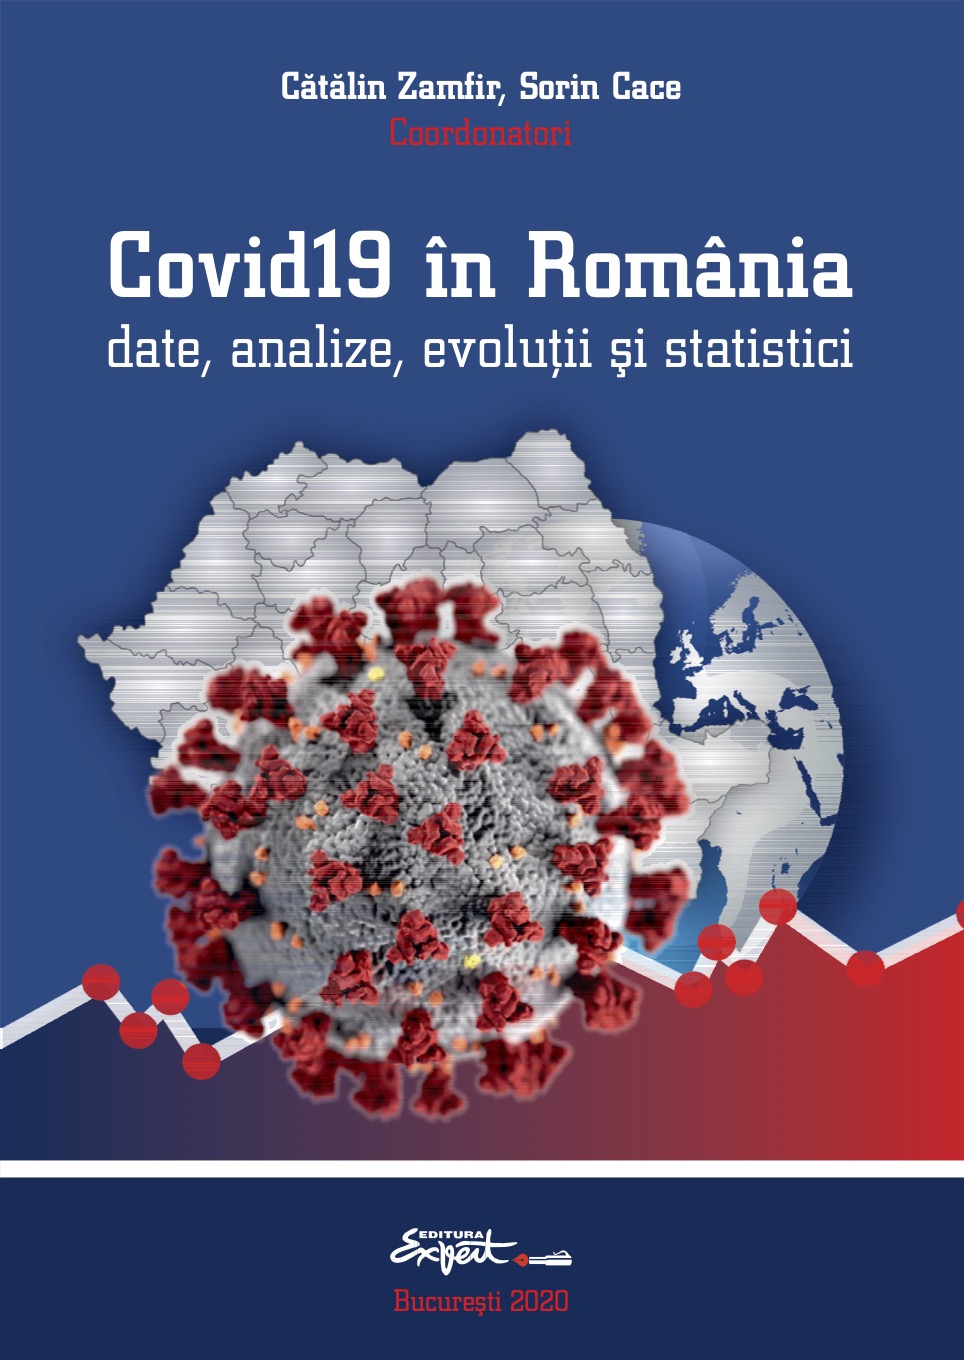 Apariție volum “Covid19 în România date, analize, evoluții și statistici” coordonat de Cătălin Zamfir și Sorin Cace la Editura Expert